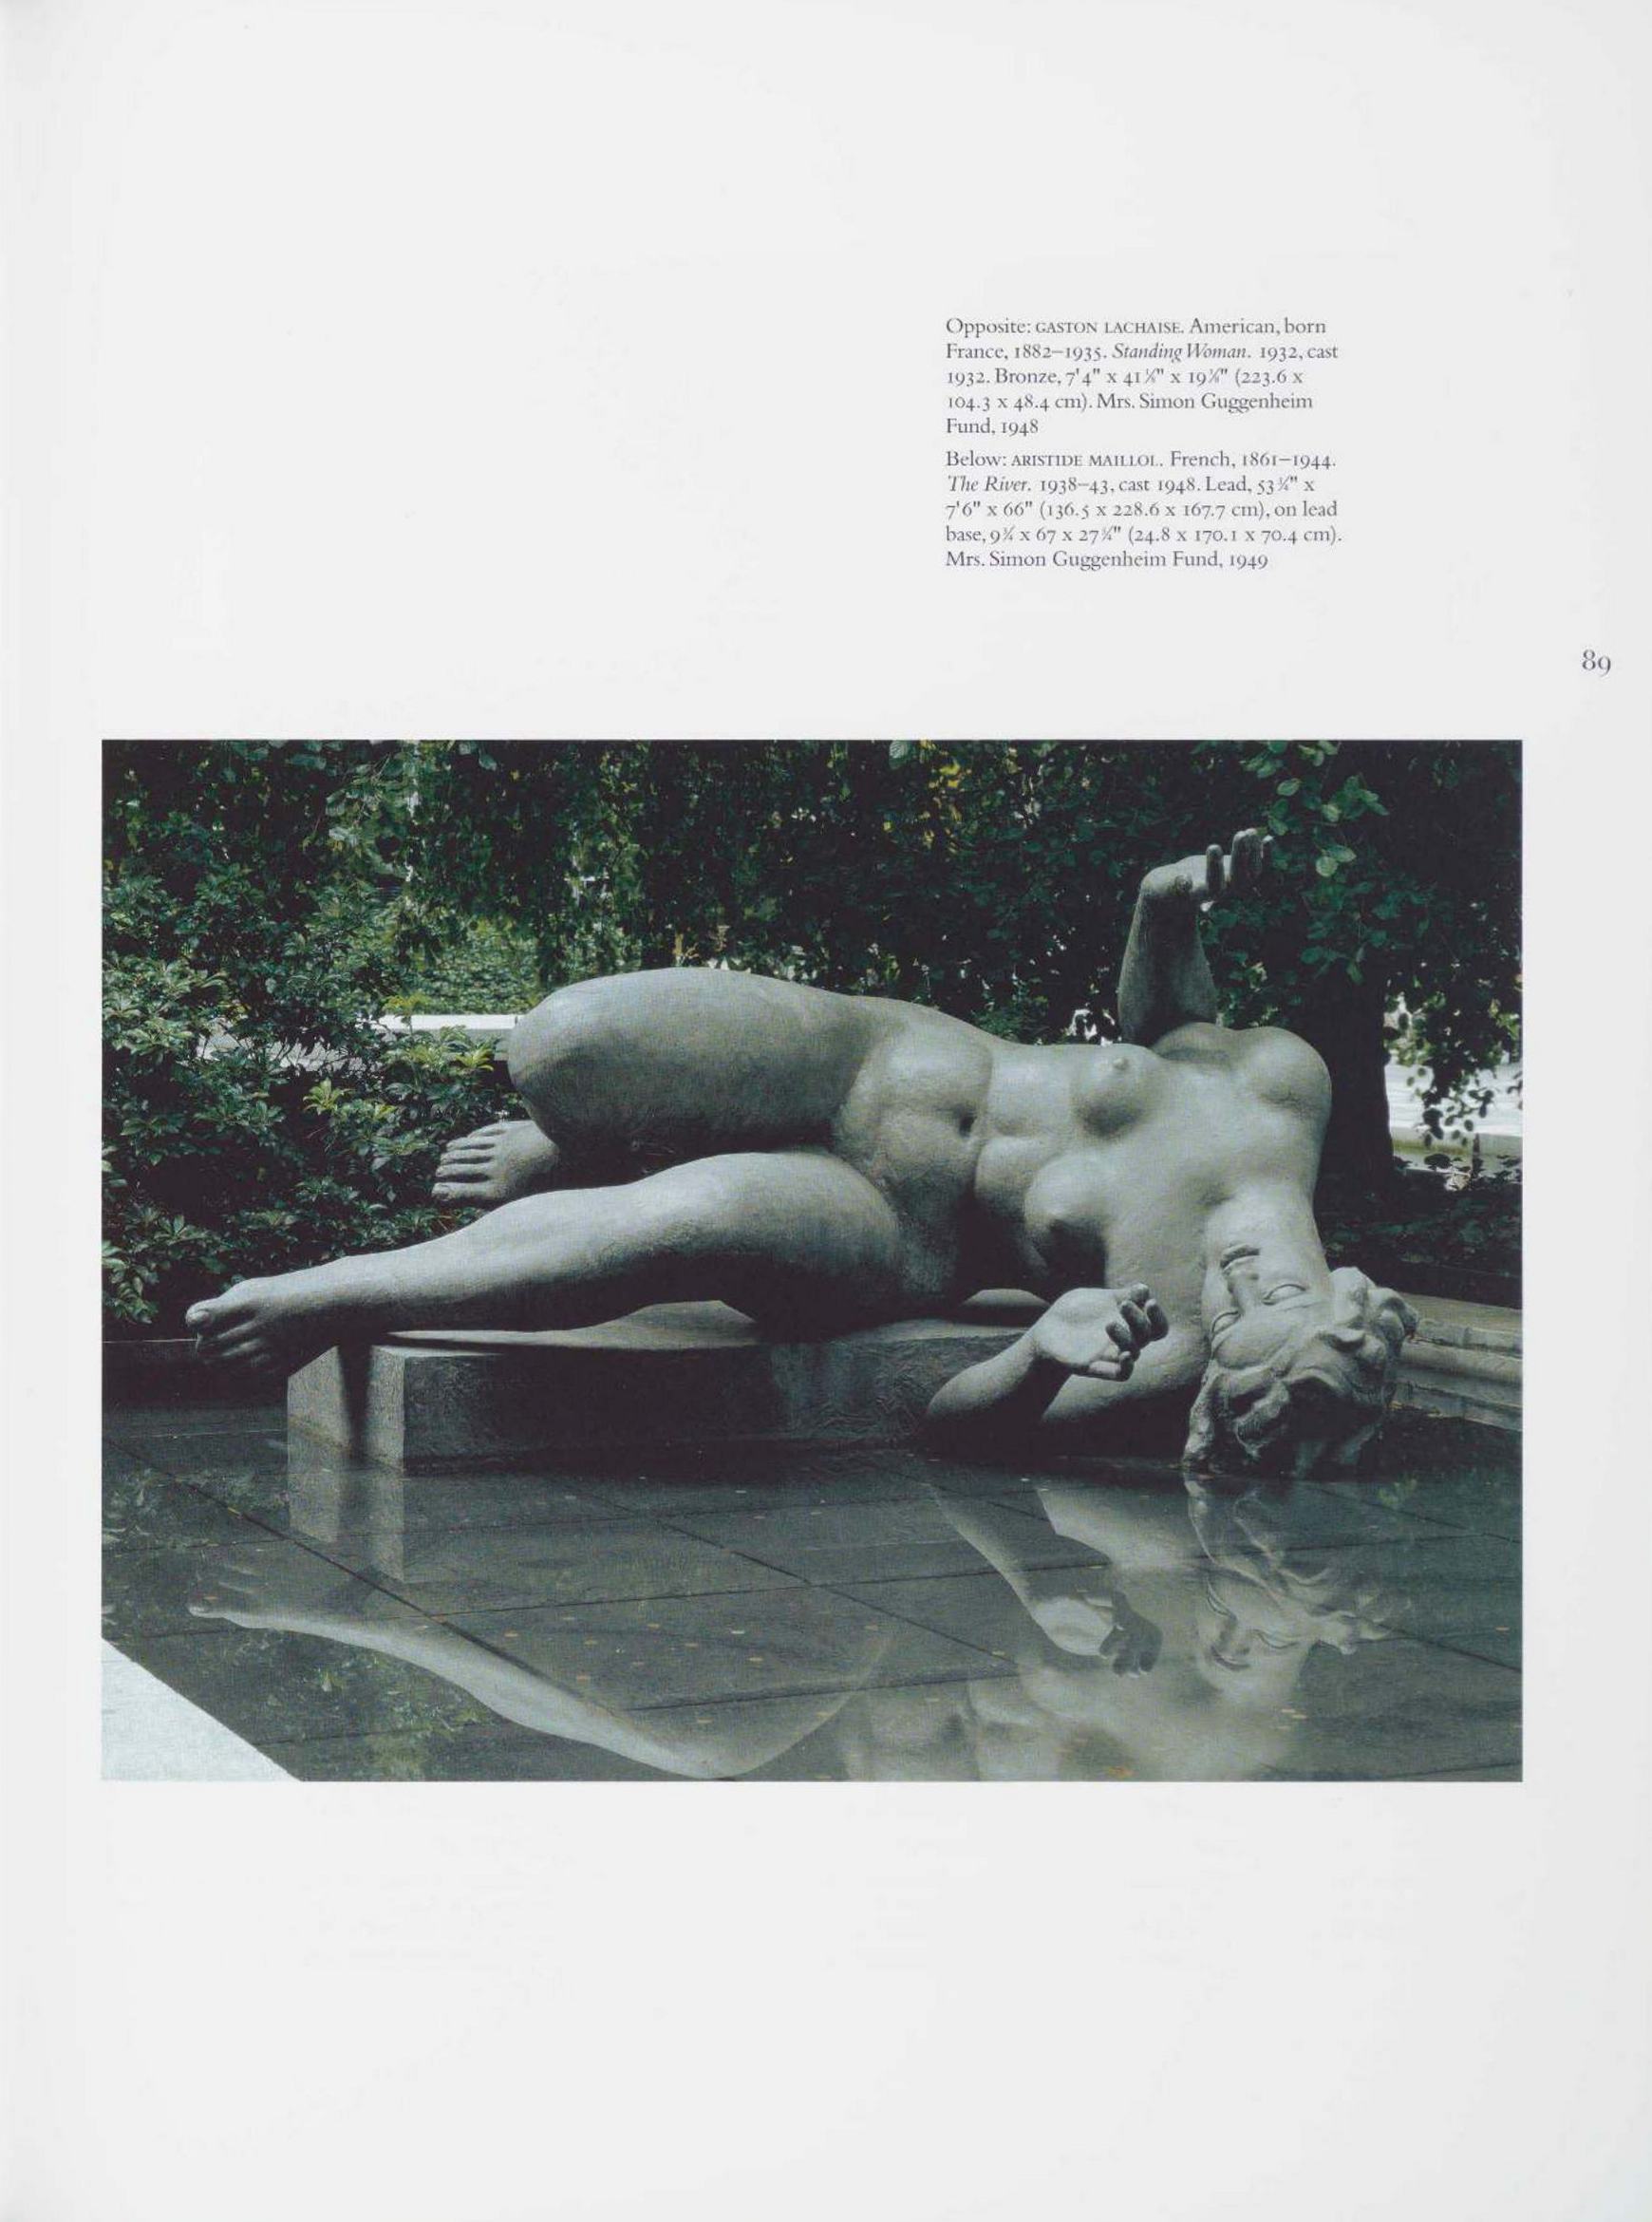 Modern art despite modernism / Robert Storr.  — New York : The Museum of Modern Art, 2000